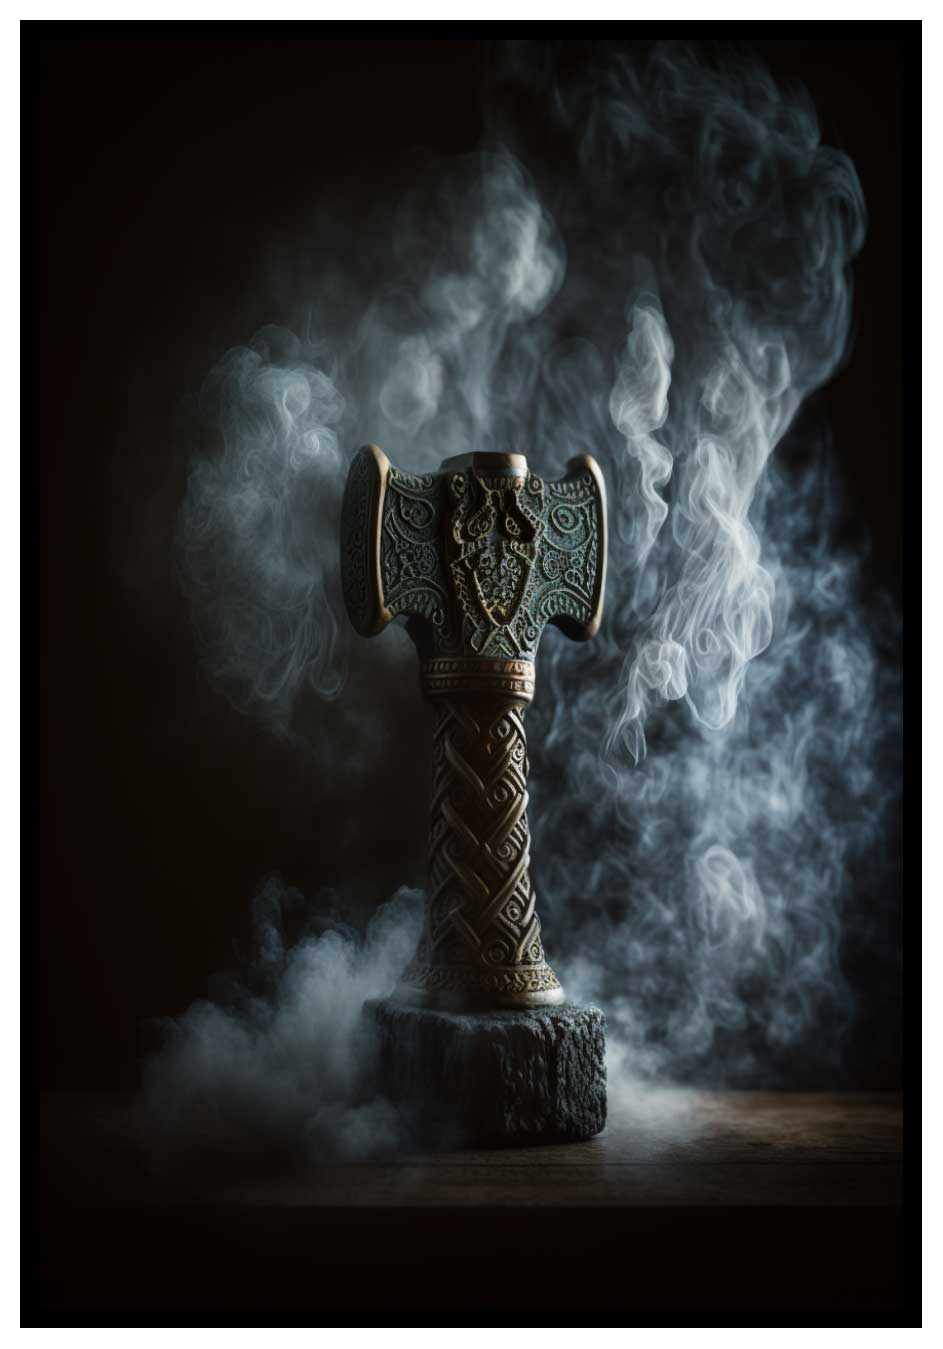 Il martello di Thor - poster in antico norvegese 